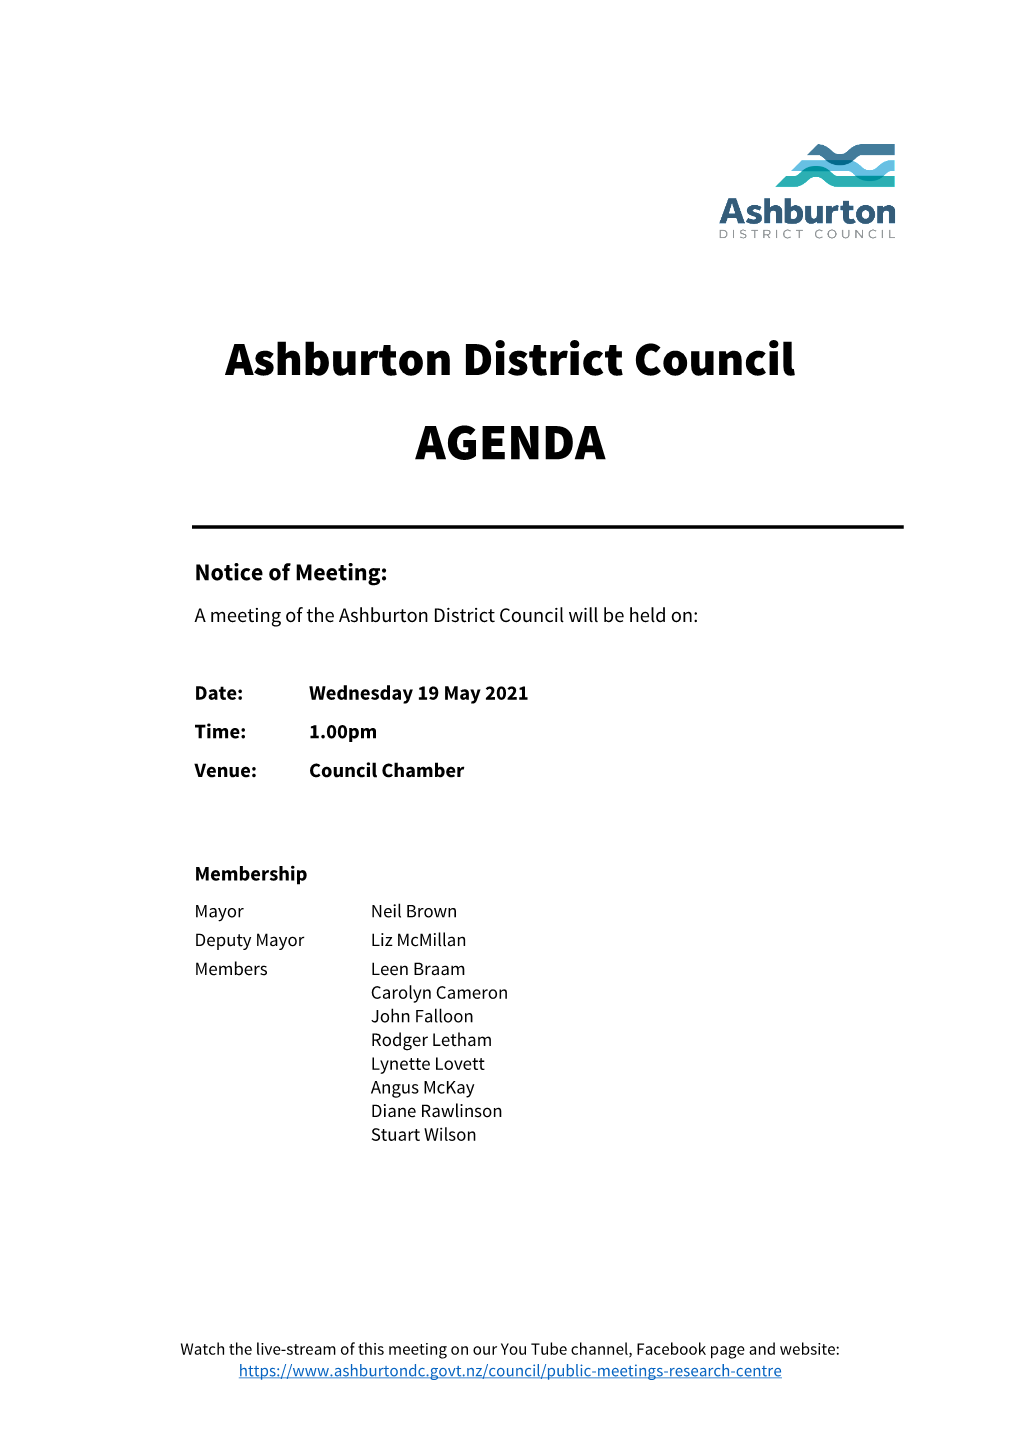 Council Agenda 19 May 2021